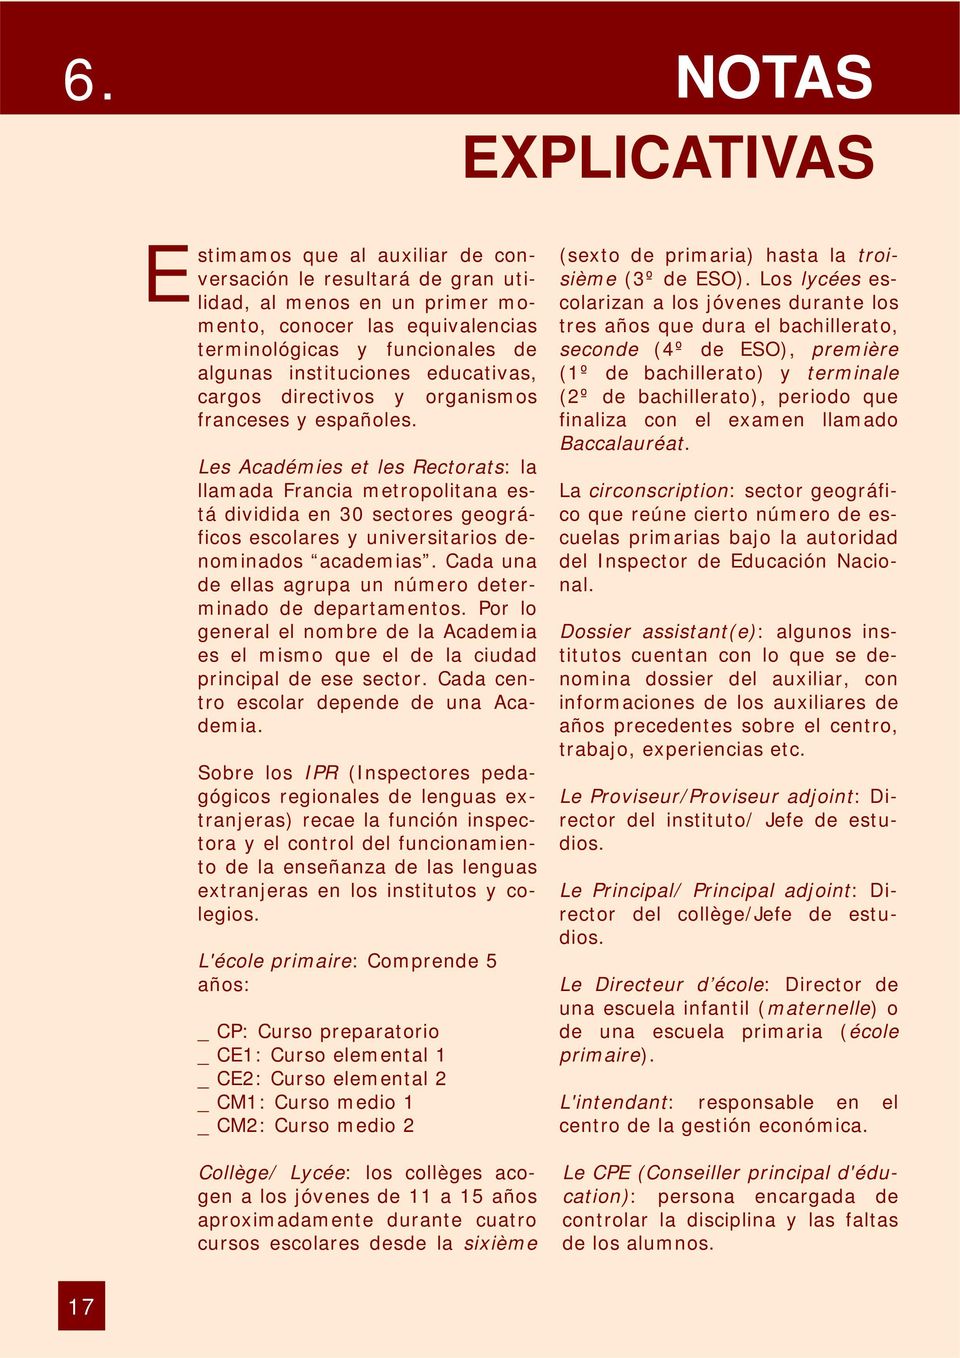 Les Académies et les Rectorats: la llamada Francia metropolitana está dividida en 30 sectores geográficos escolares y universitarios denominados academias.